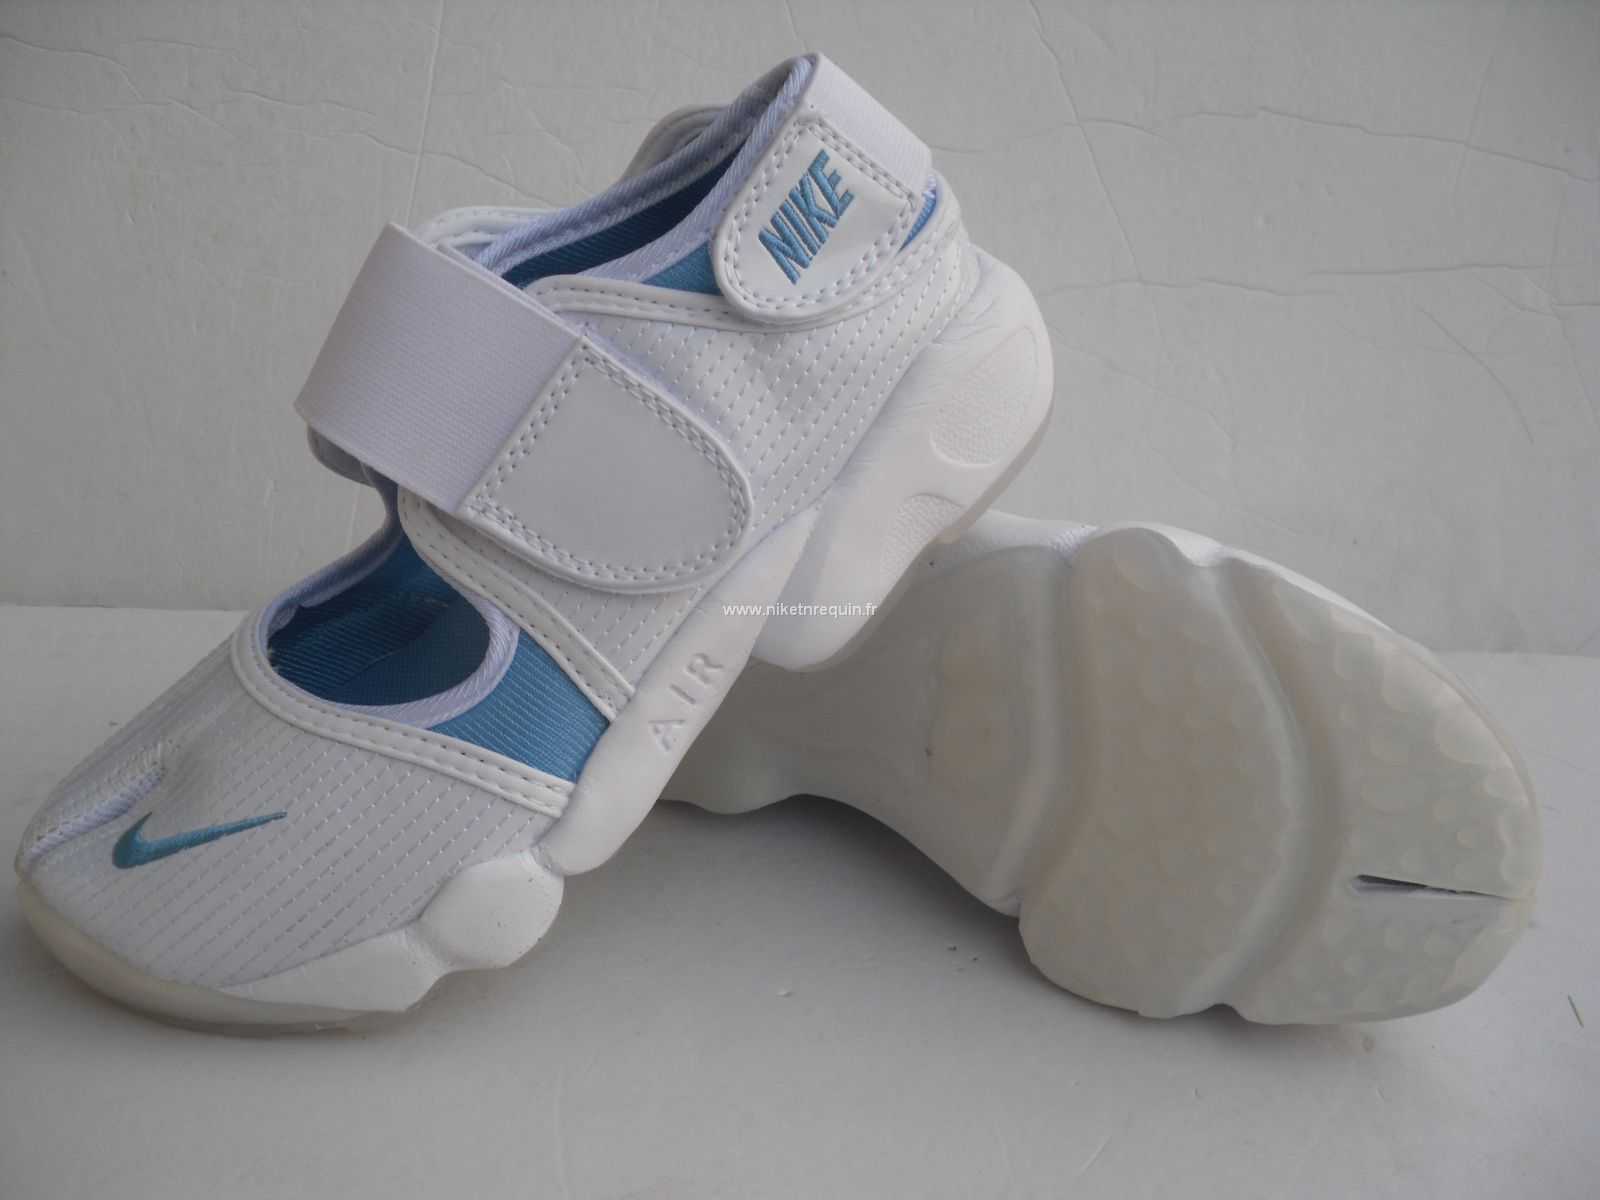 Nouveau Modele De Confortables Chaussures Nike Shox Rift Blanc Bleu